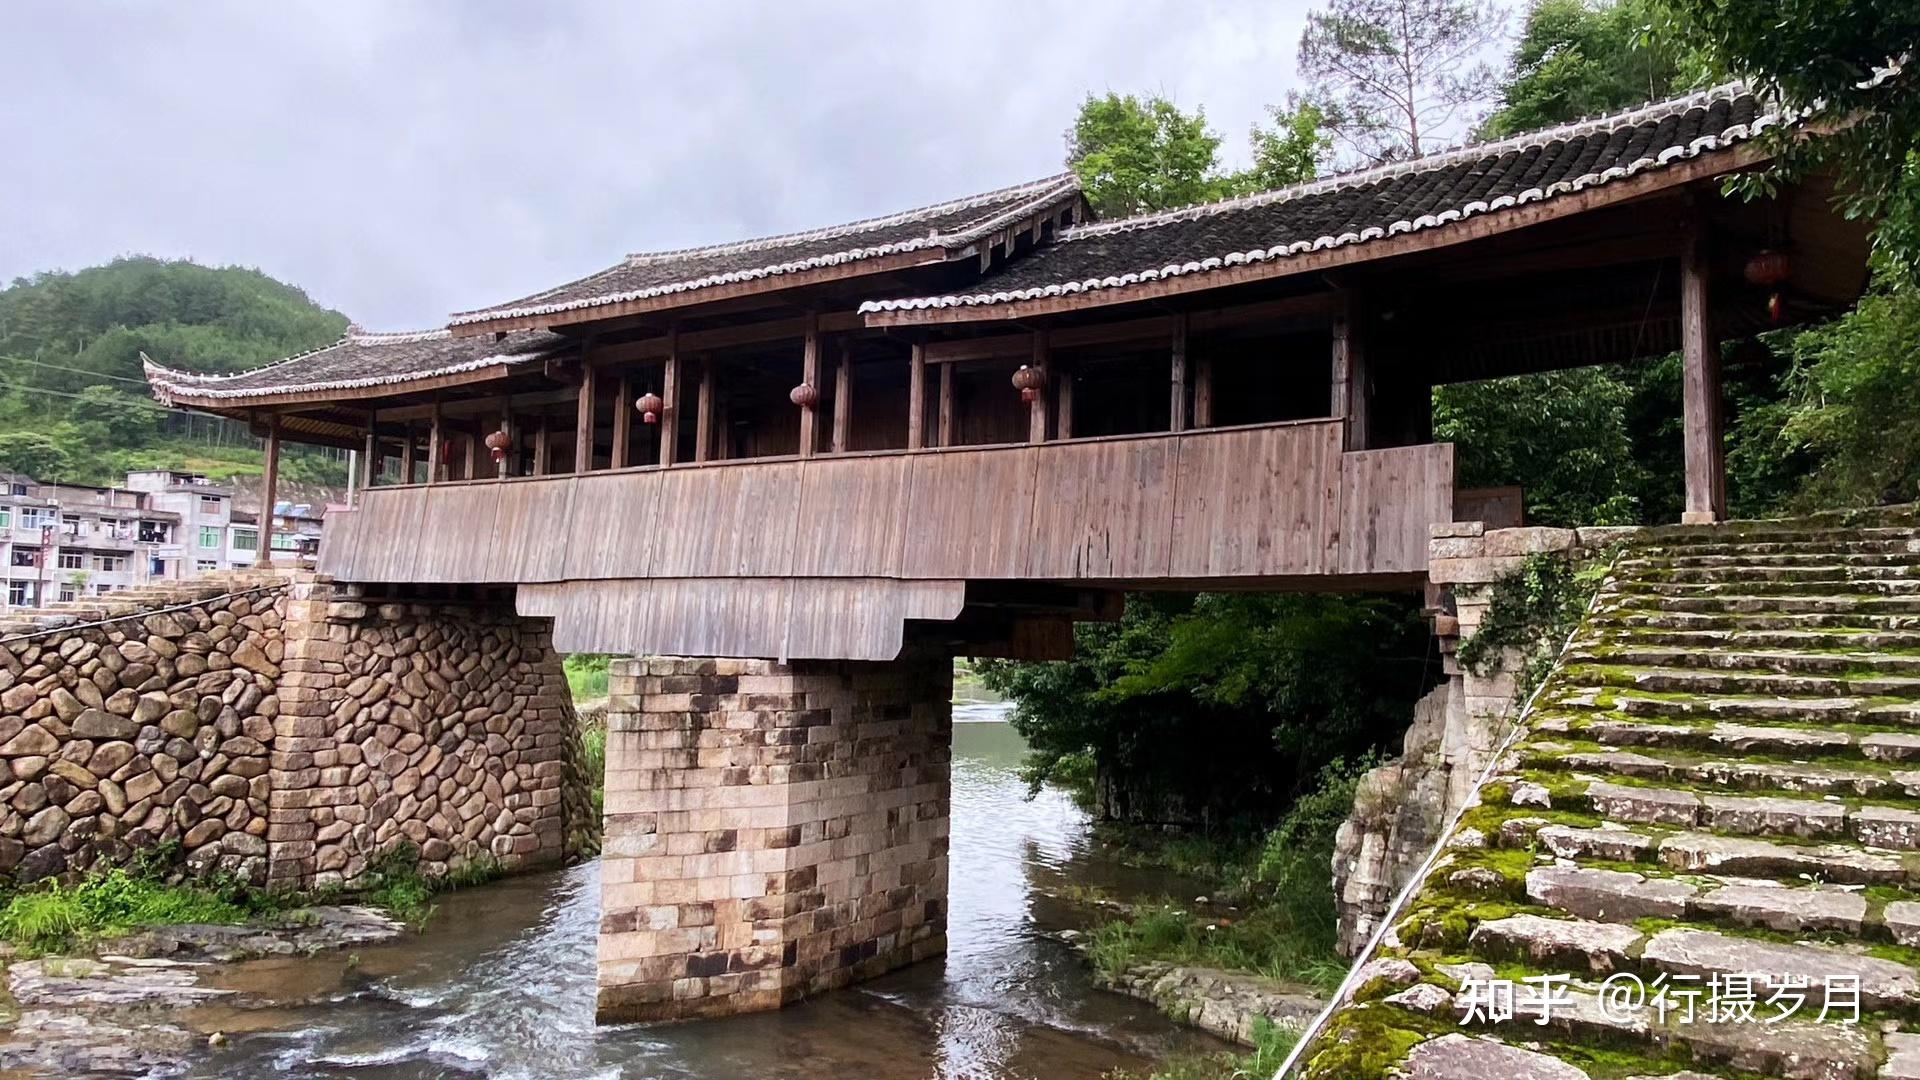 永庆桥,位于三魁镇战州下溪坪村,建于南宋宁宗庆元三年,为梁式石桥